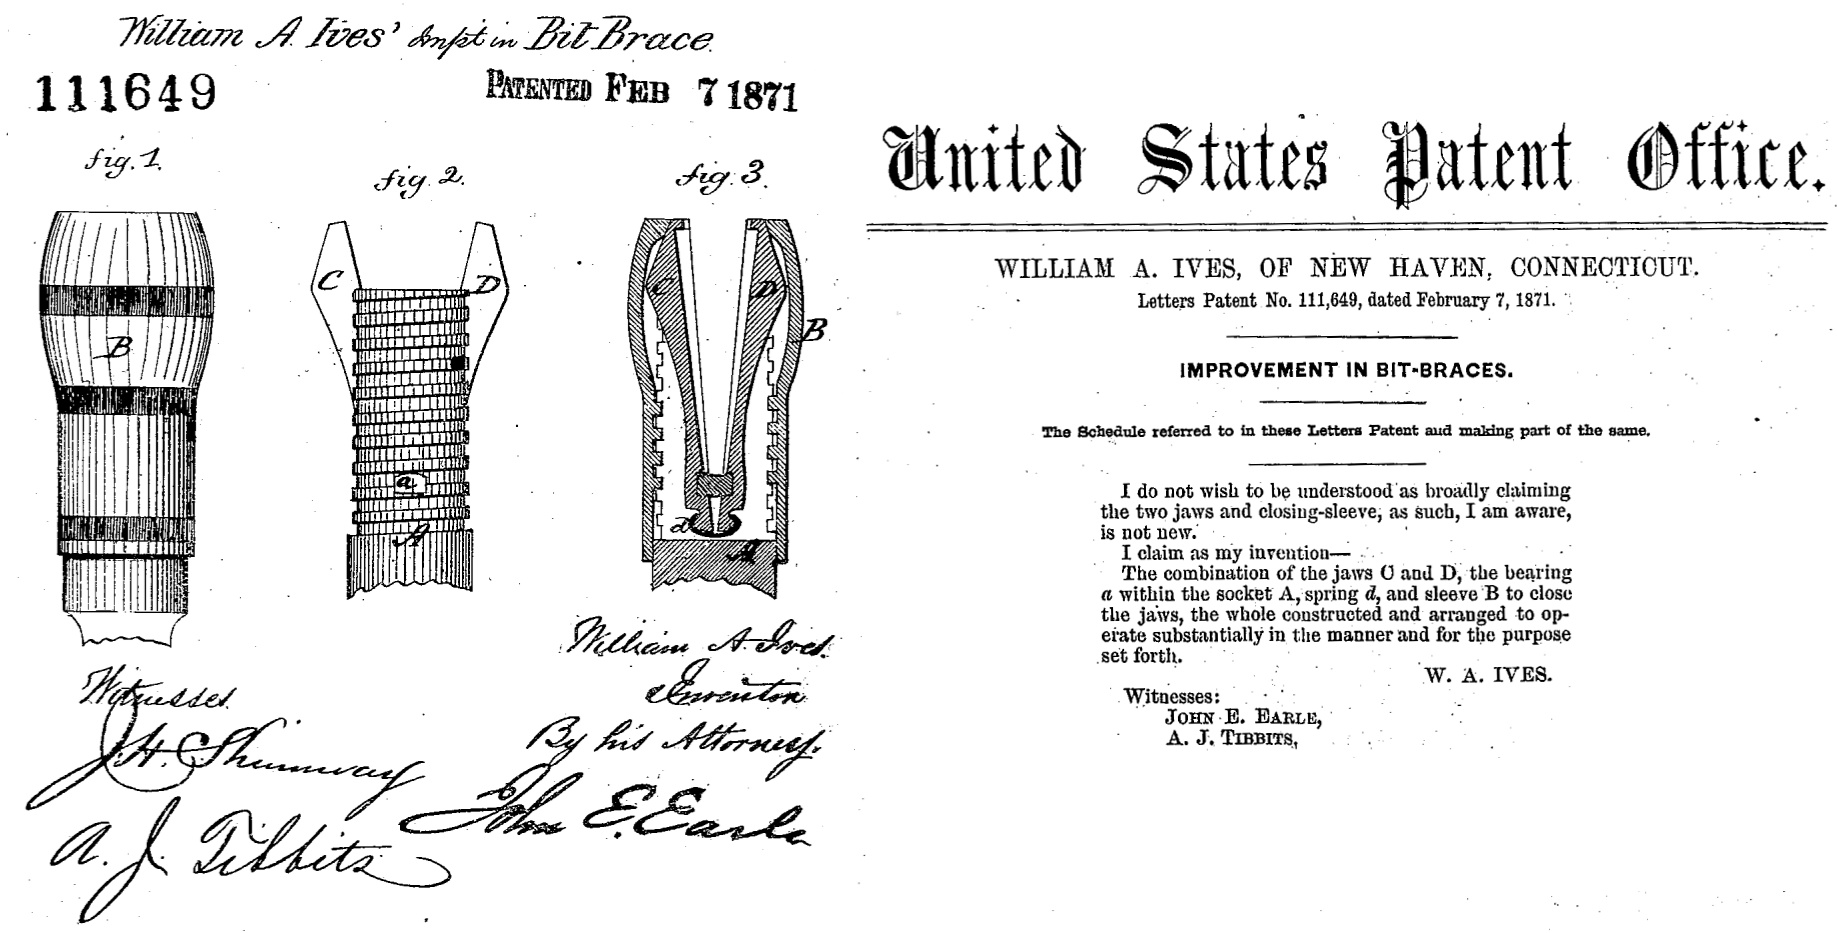 U.S. Patent No.111,649